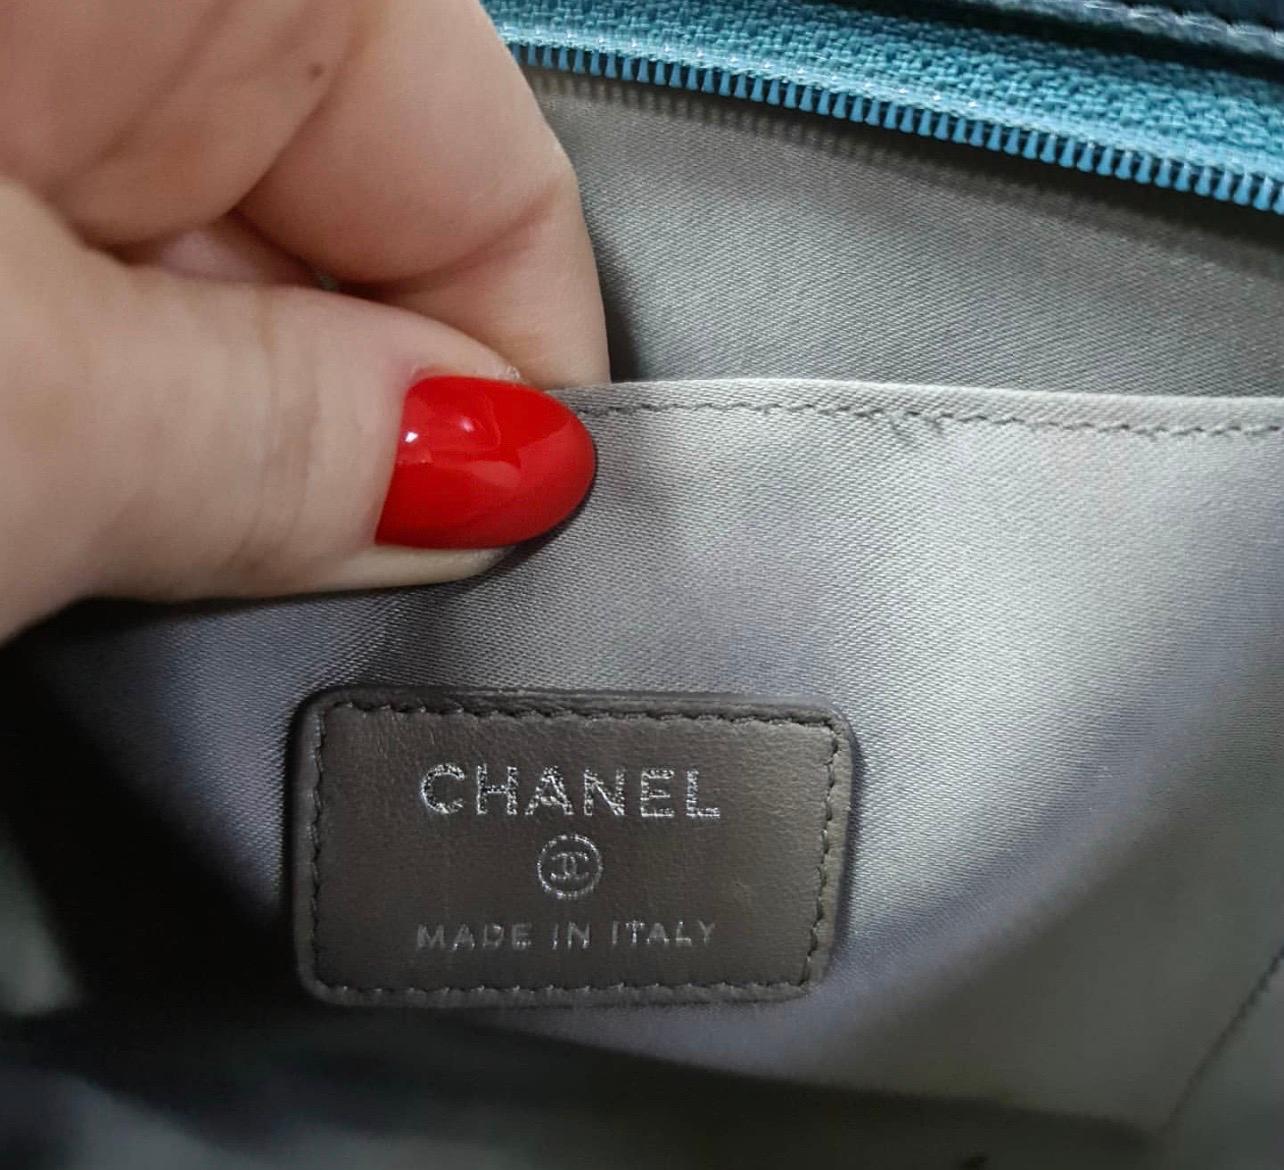 Women's Chanel Mademoiselle Biarritz No 5 Monaco Paris Purse Teal Patent Leather Baguett